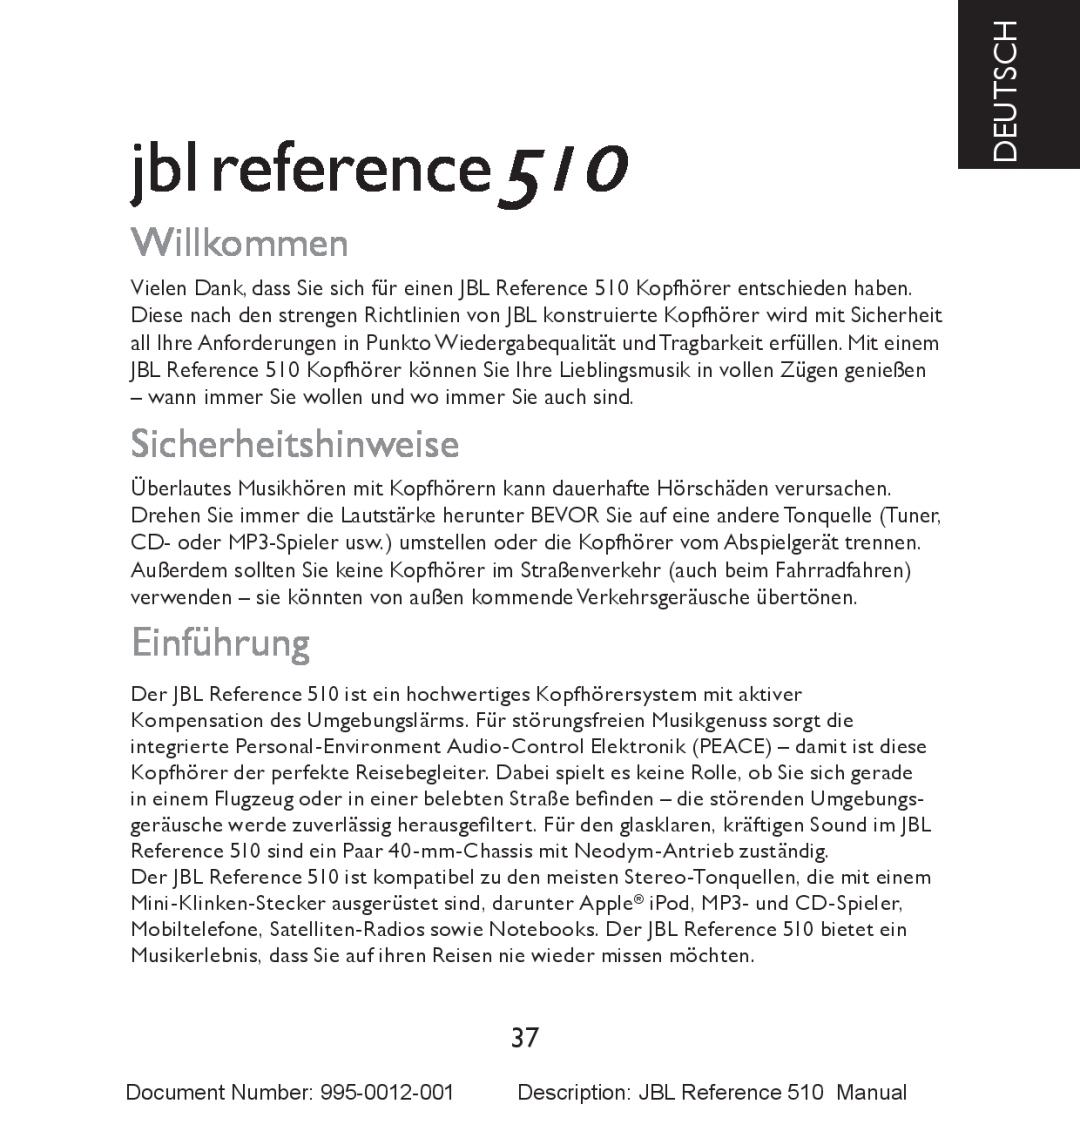 JBL manual Willkommen, Sicherheitshinweise, Einführung, Deutsch, jbl reference510 